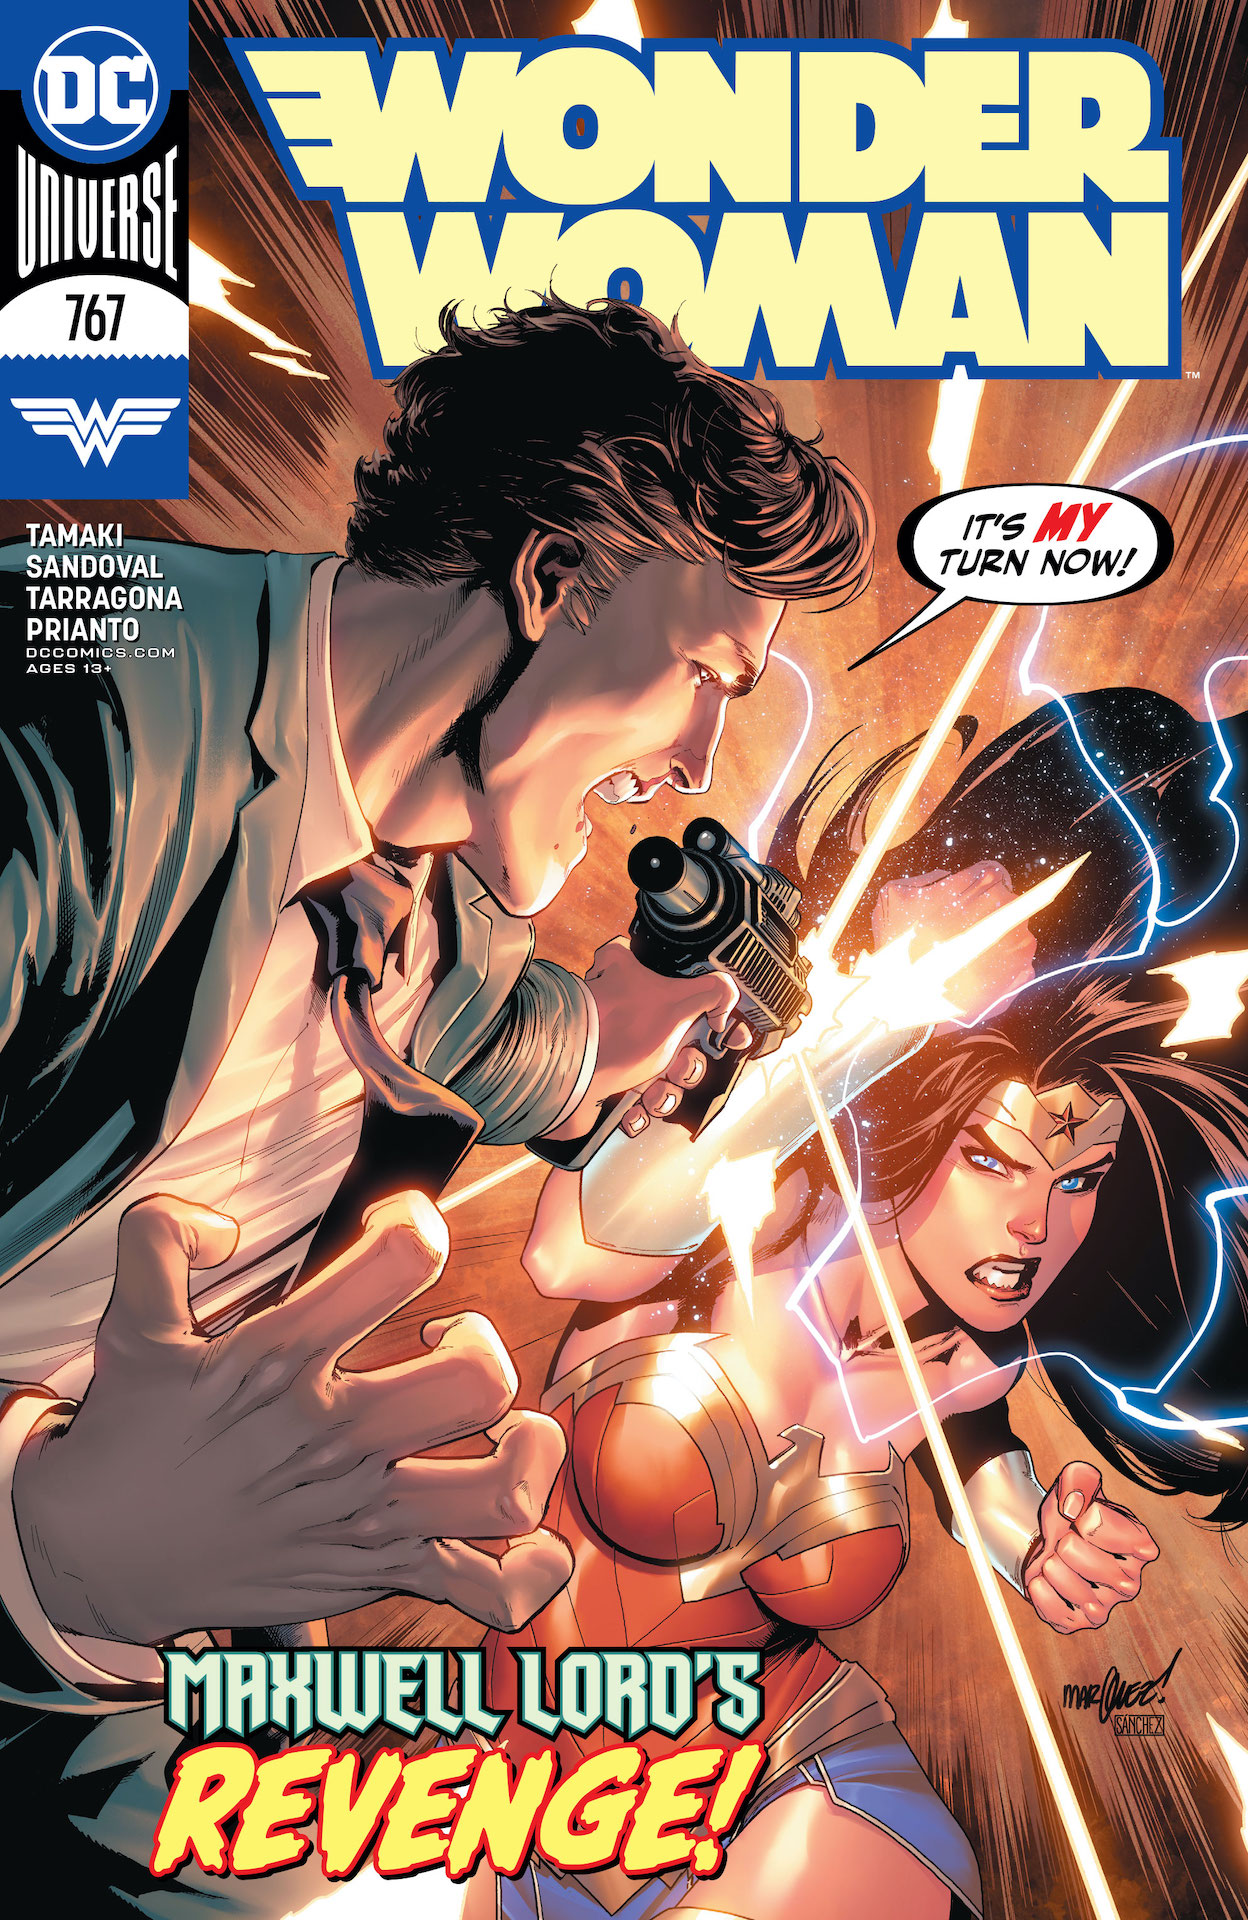 DC Preview: Wonder Woman #767